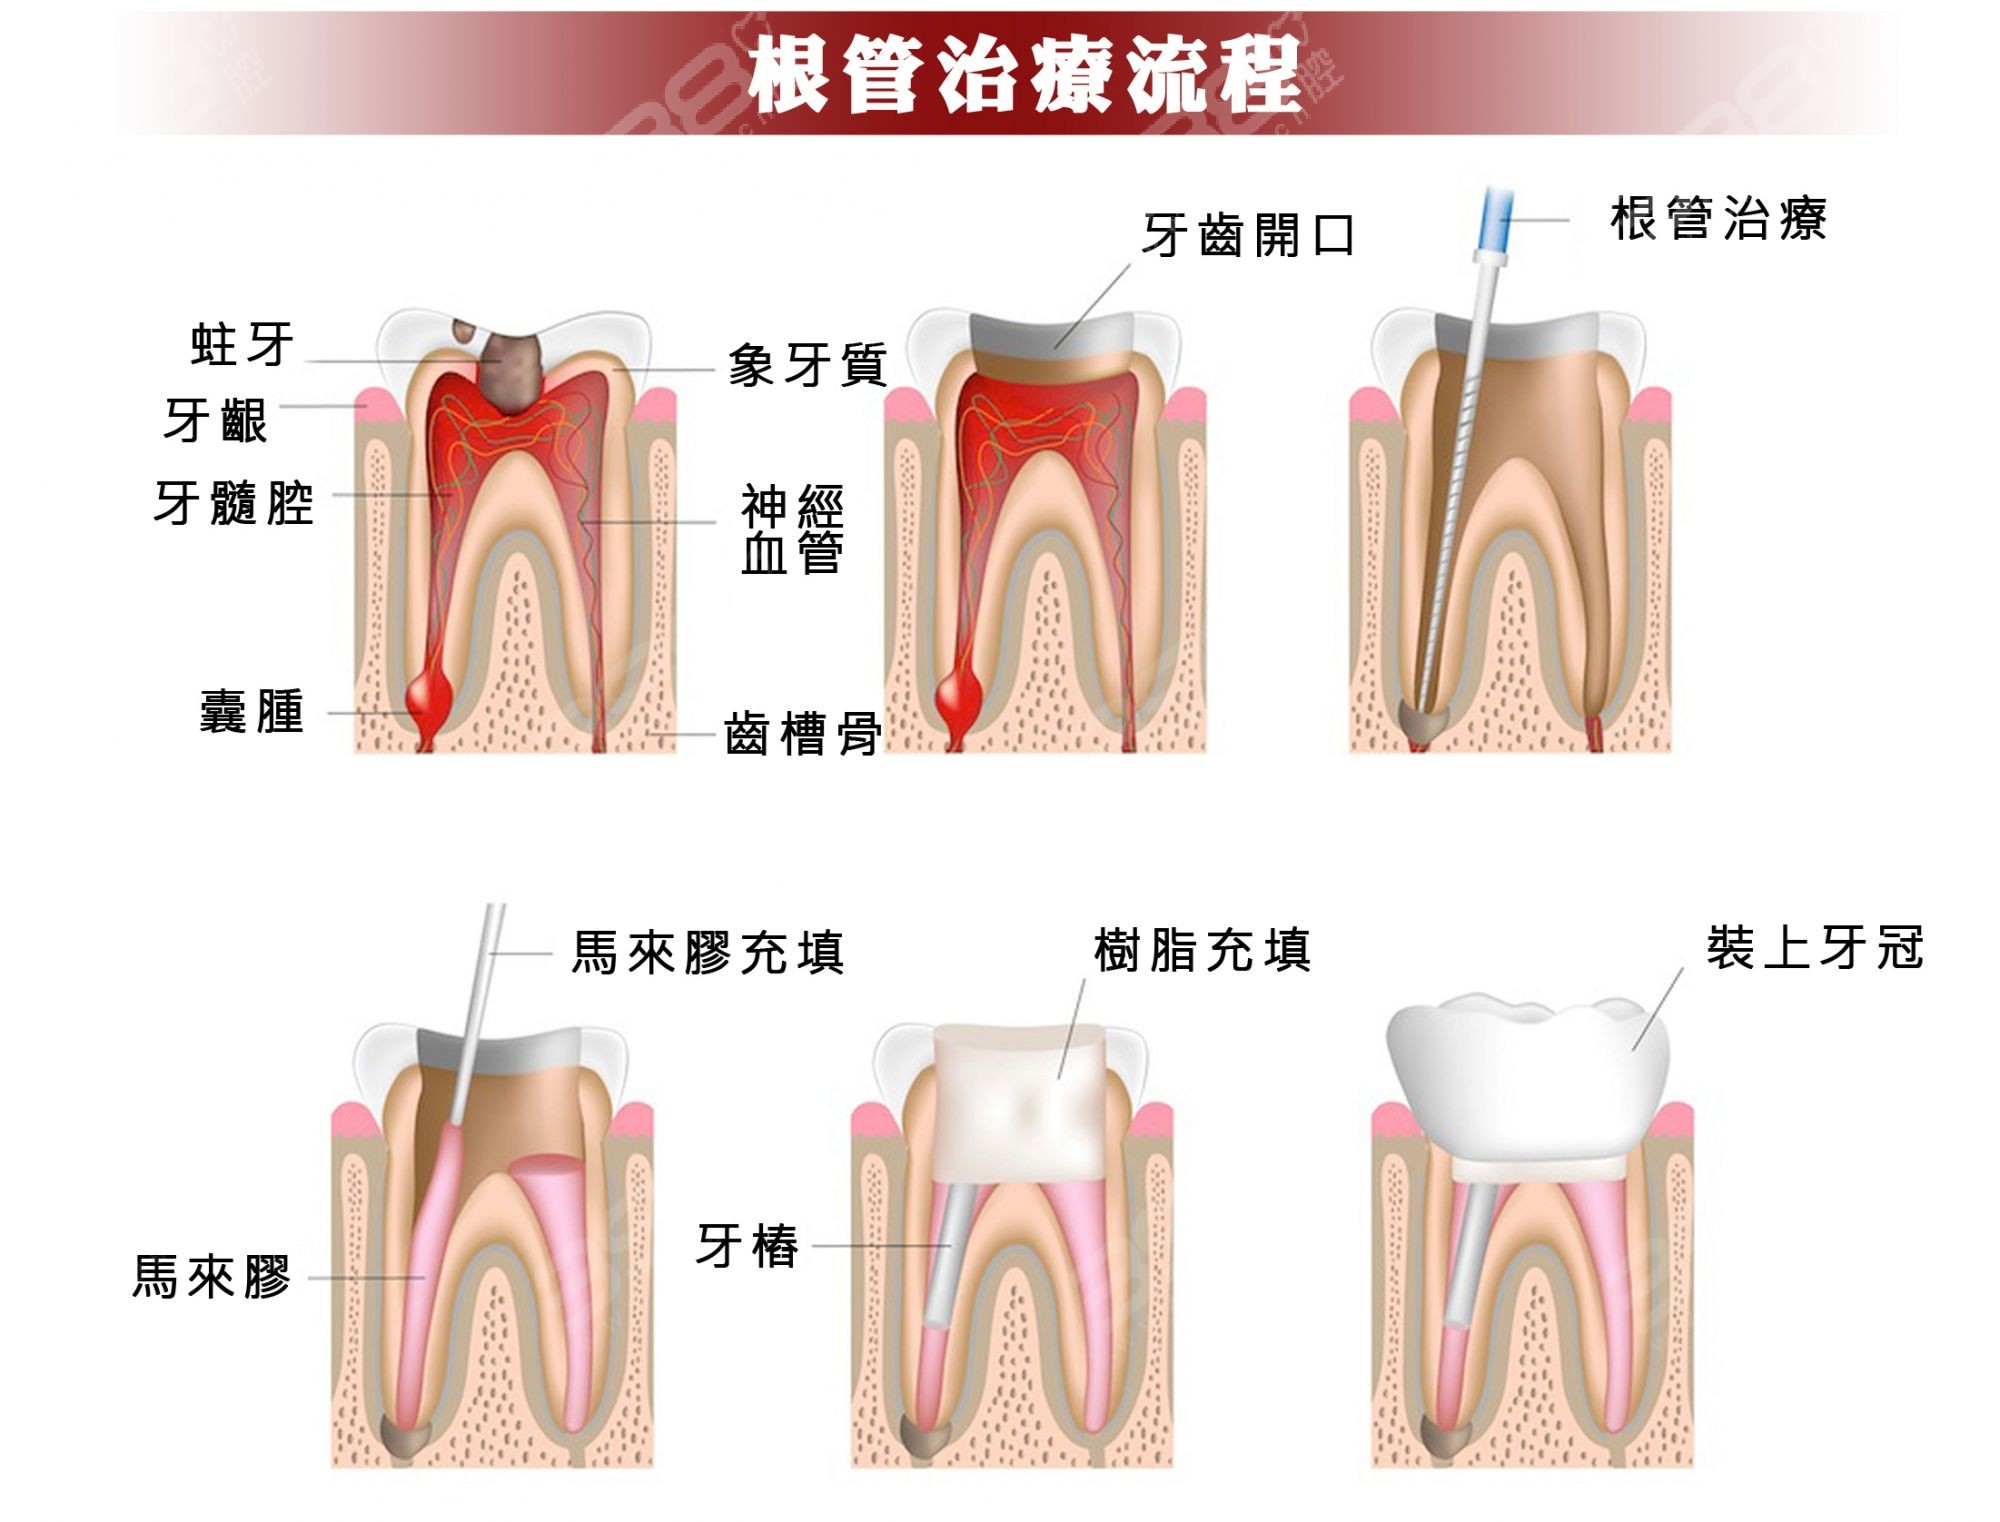 牙髓组织红蓝铅笔图图片